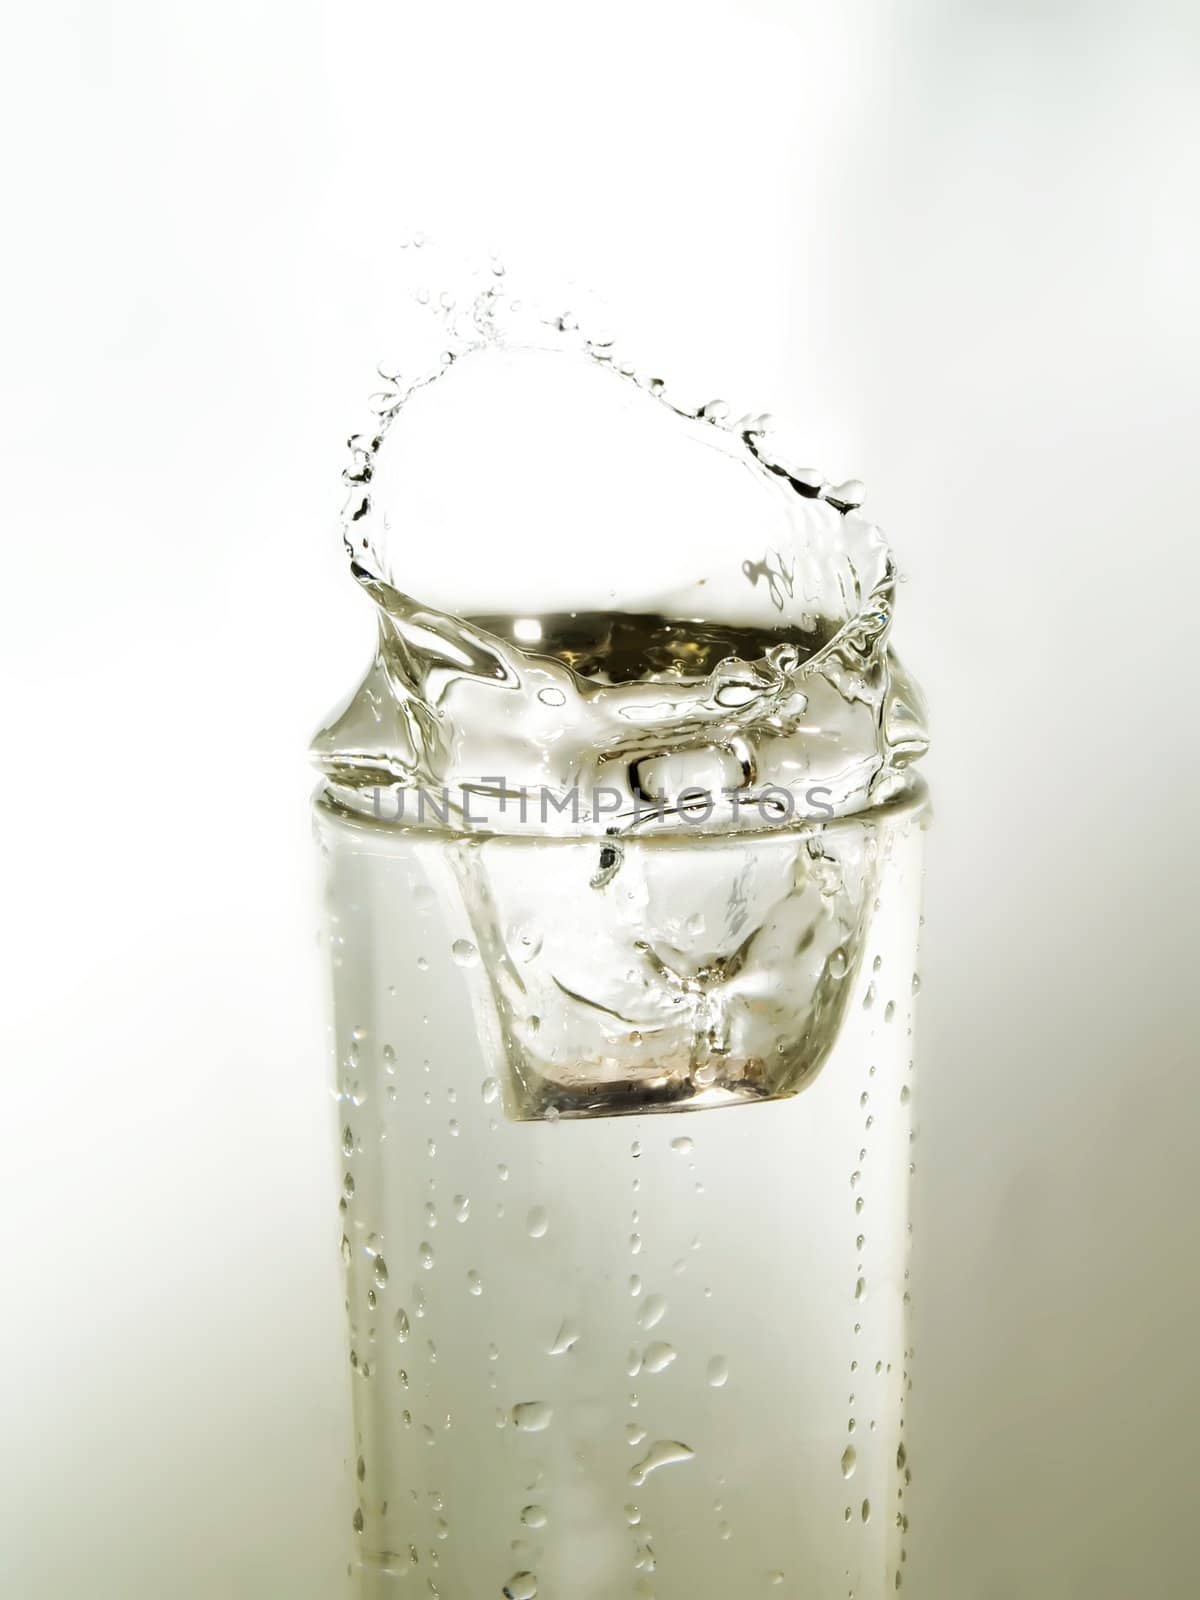 Water by henrischmit